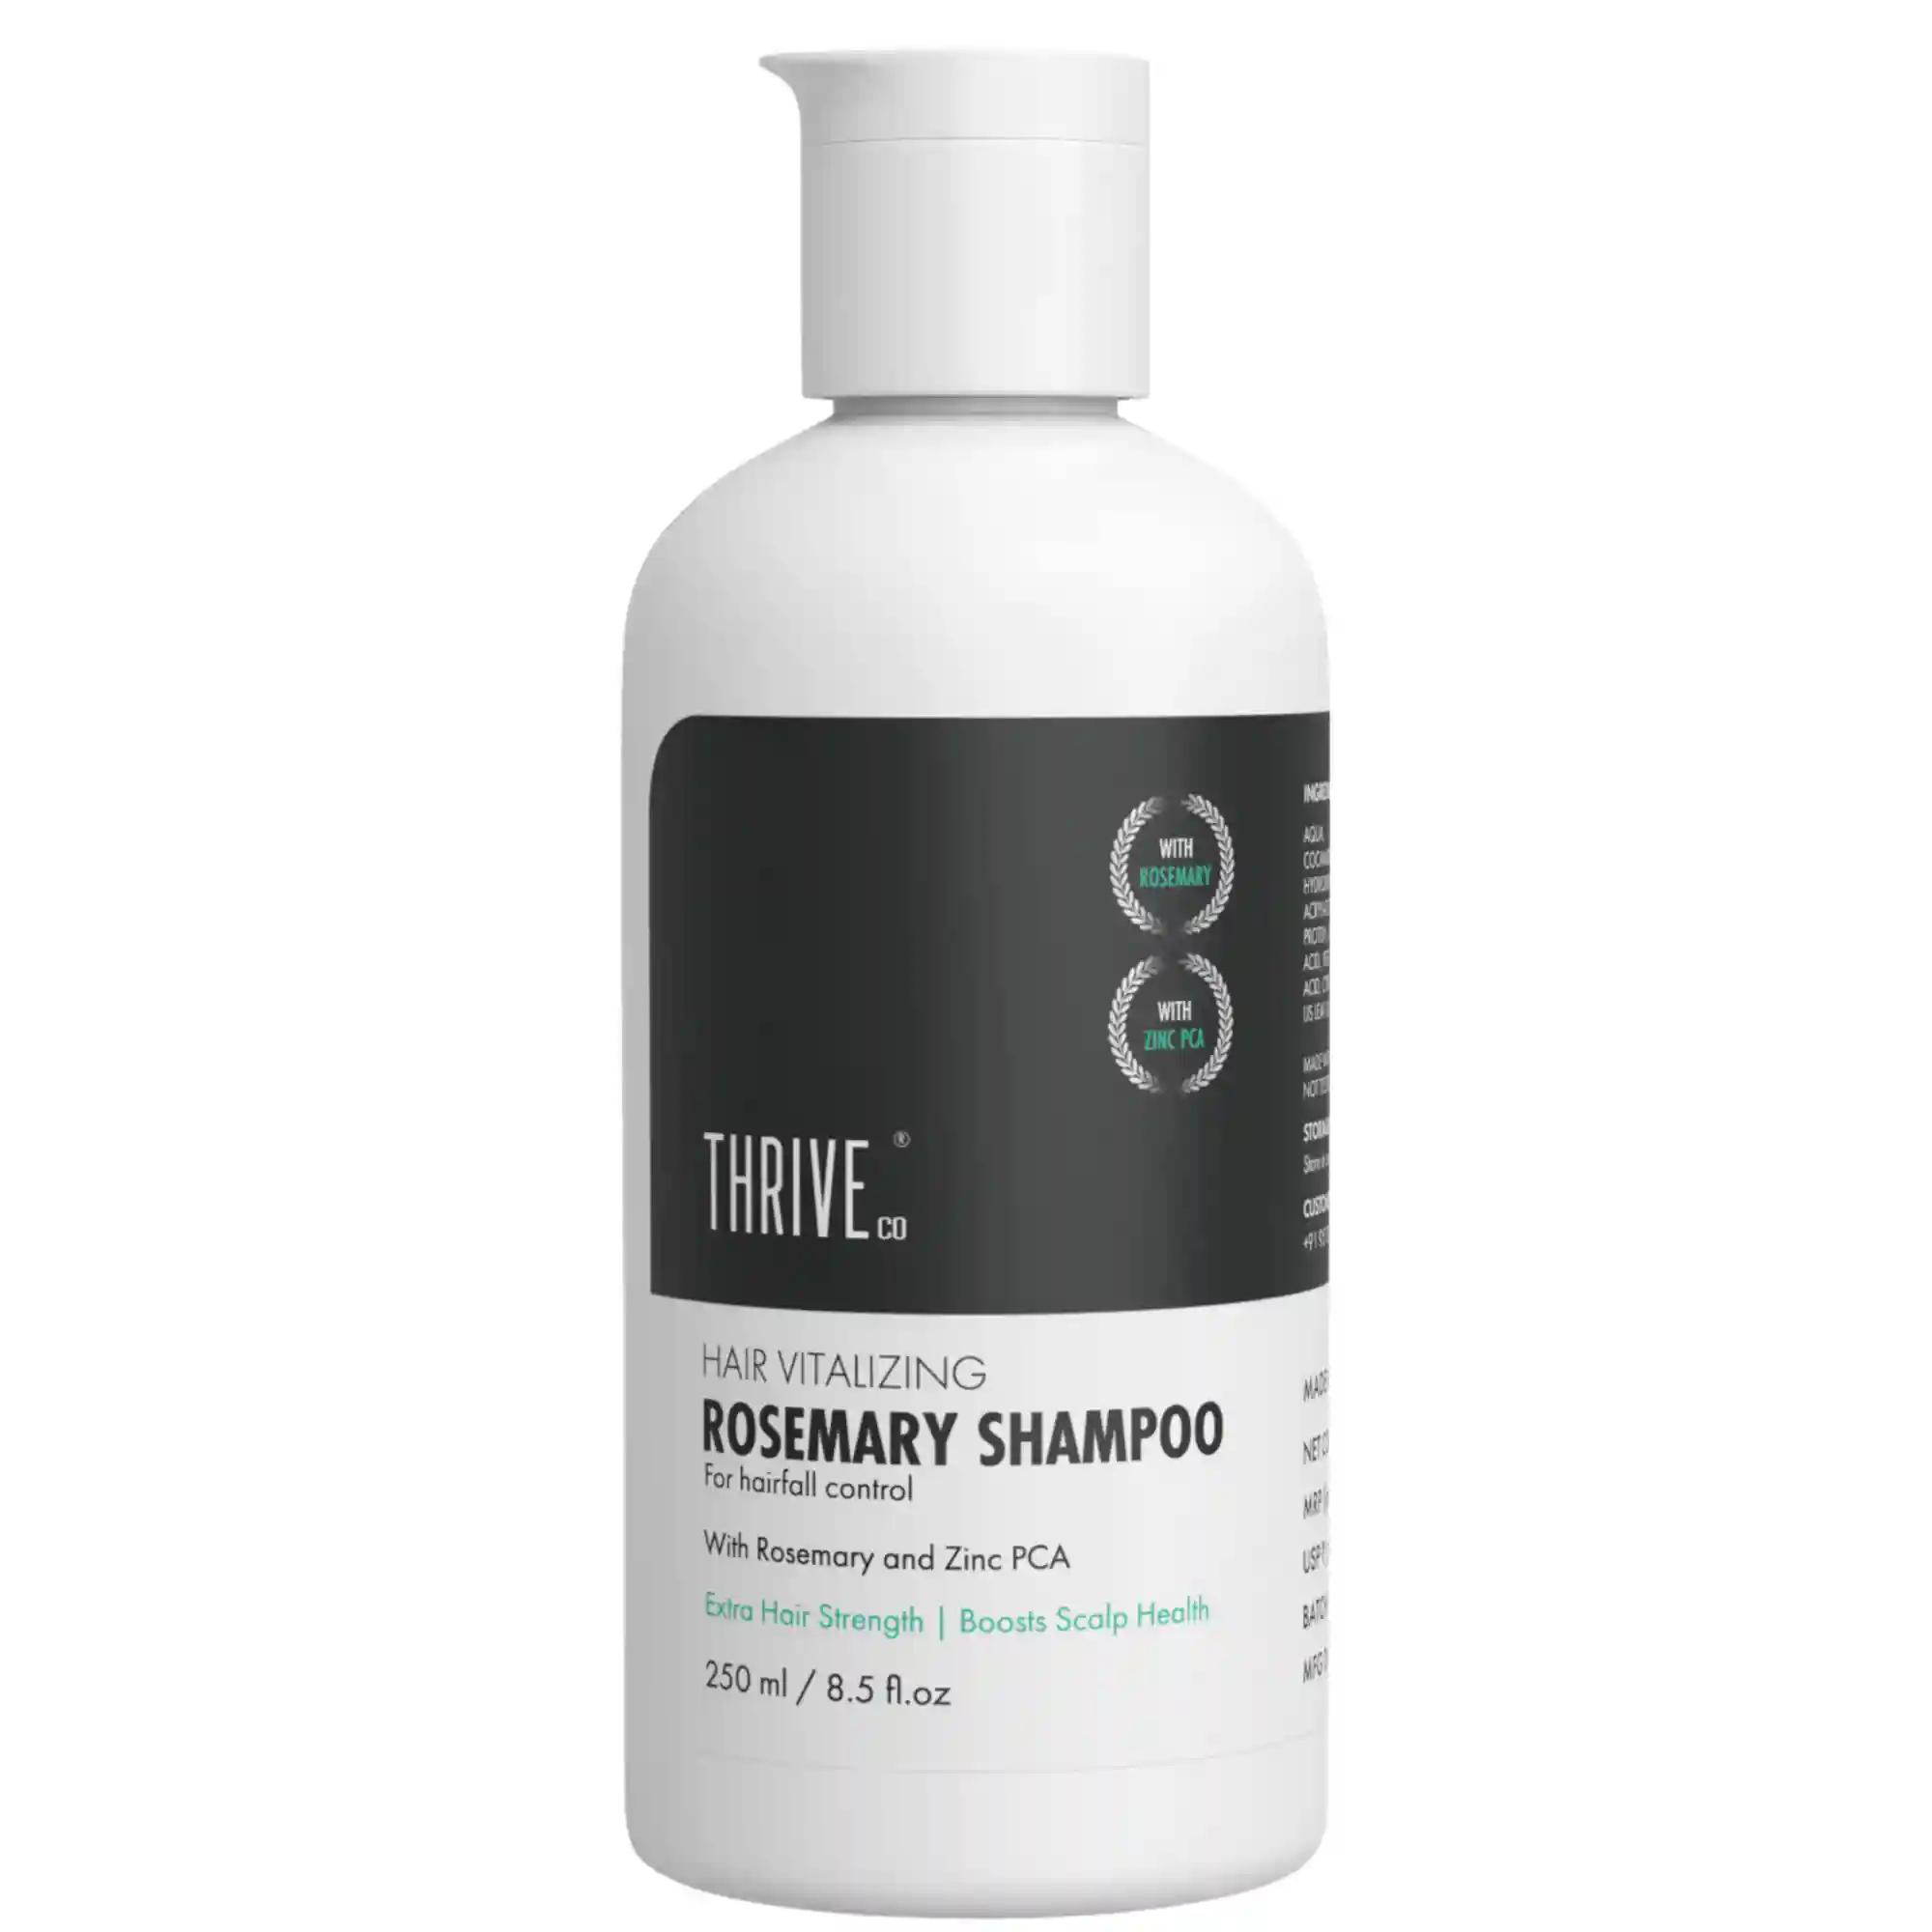 ThriveCo Hair Vitalizing Rosemary Shampoo, 250ml